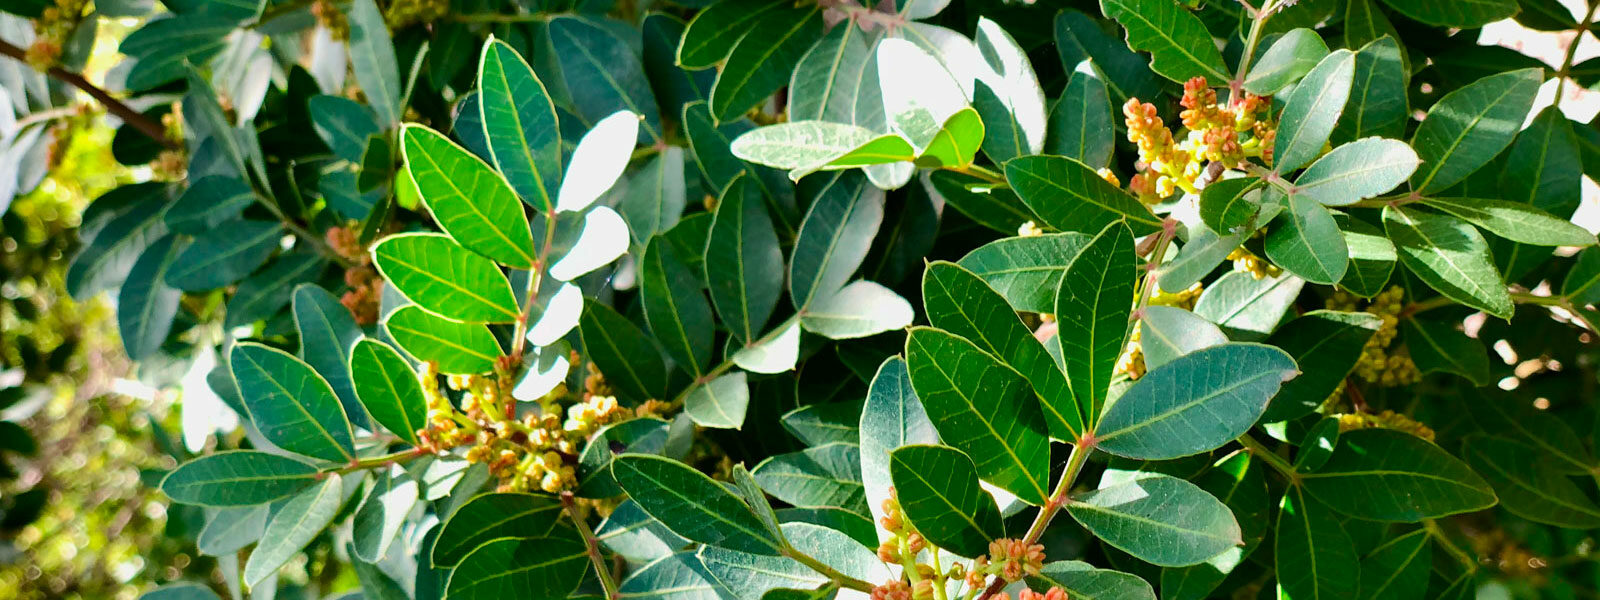 Řečík lentišek (pistacia lentiscus) listoví